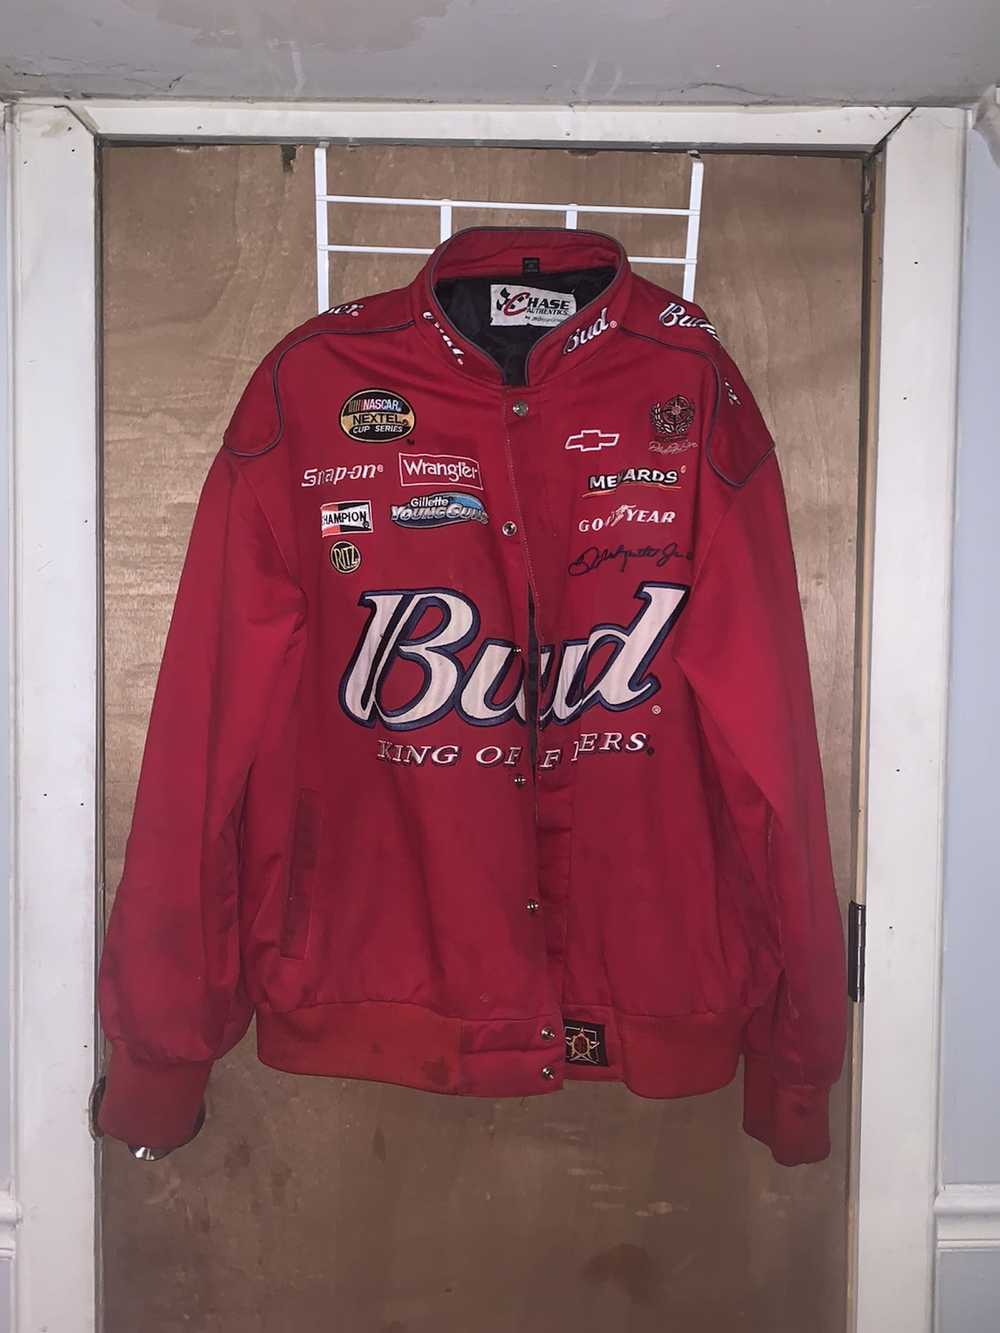 NASCAR Dale Earnhardt Budweiser racing jacket - Gem